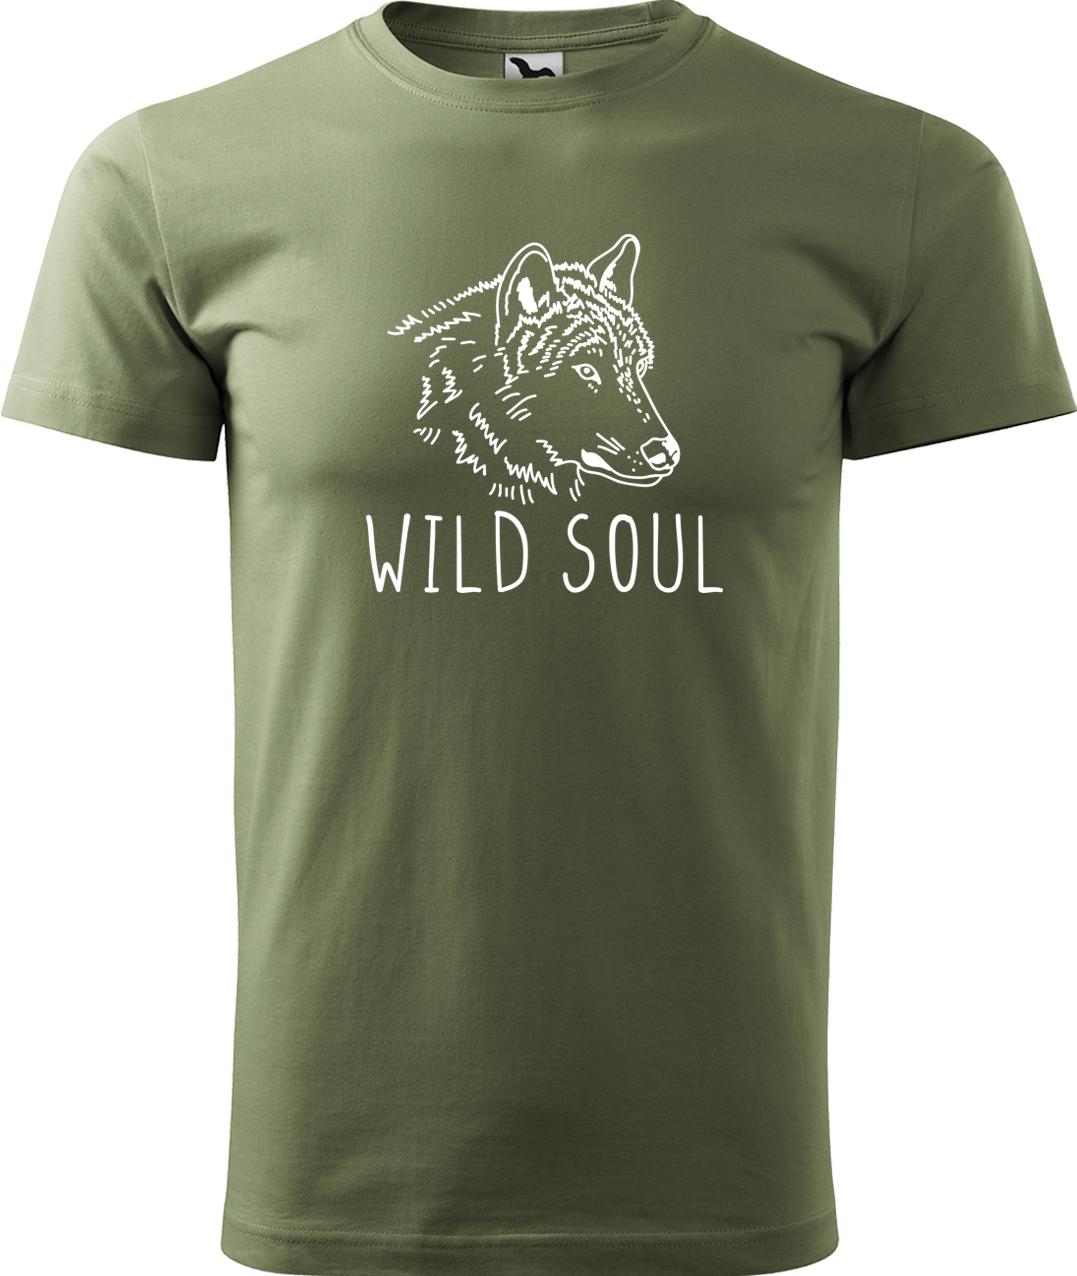 Pánské tričko s vlkem - Wild soul Velikost: L, Barva: Světlá khaki (28), Střih: pánský